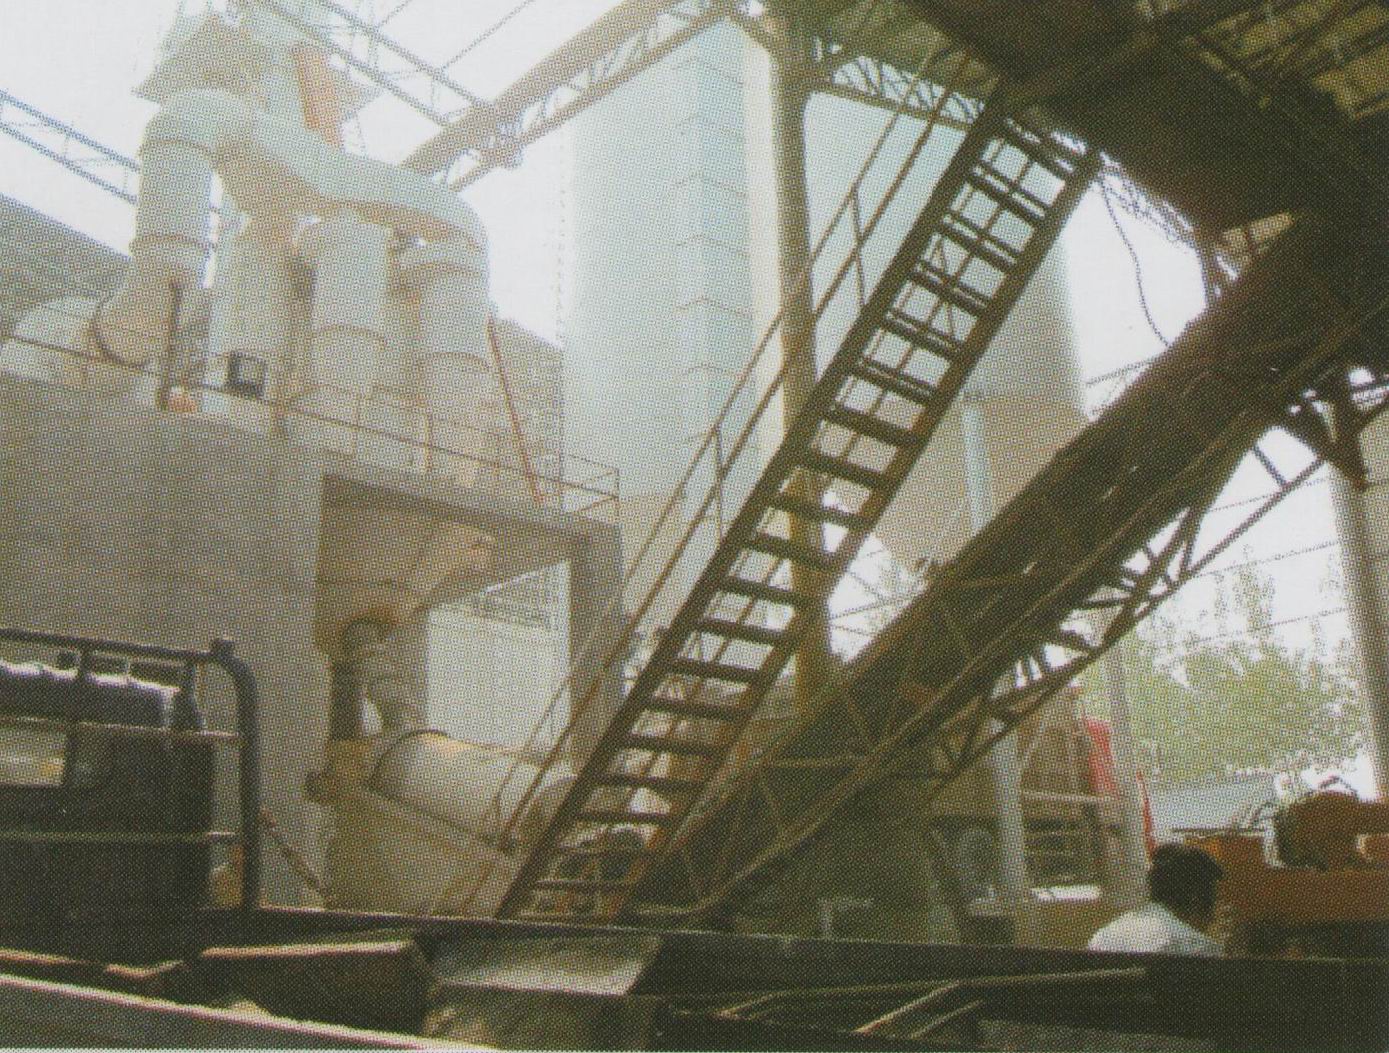 济南某混凝土公司机制砂石料生产线